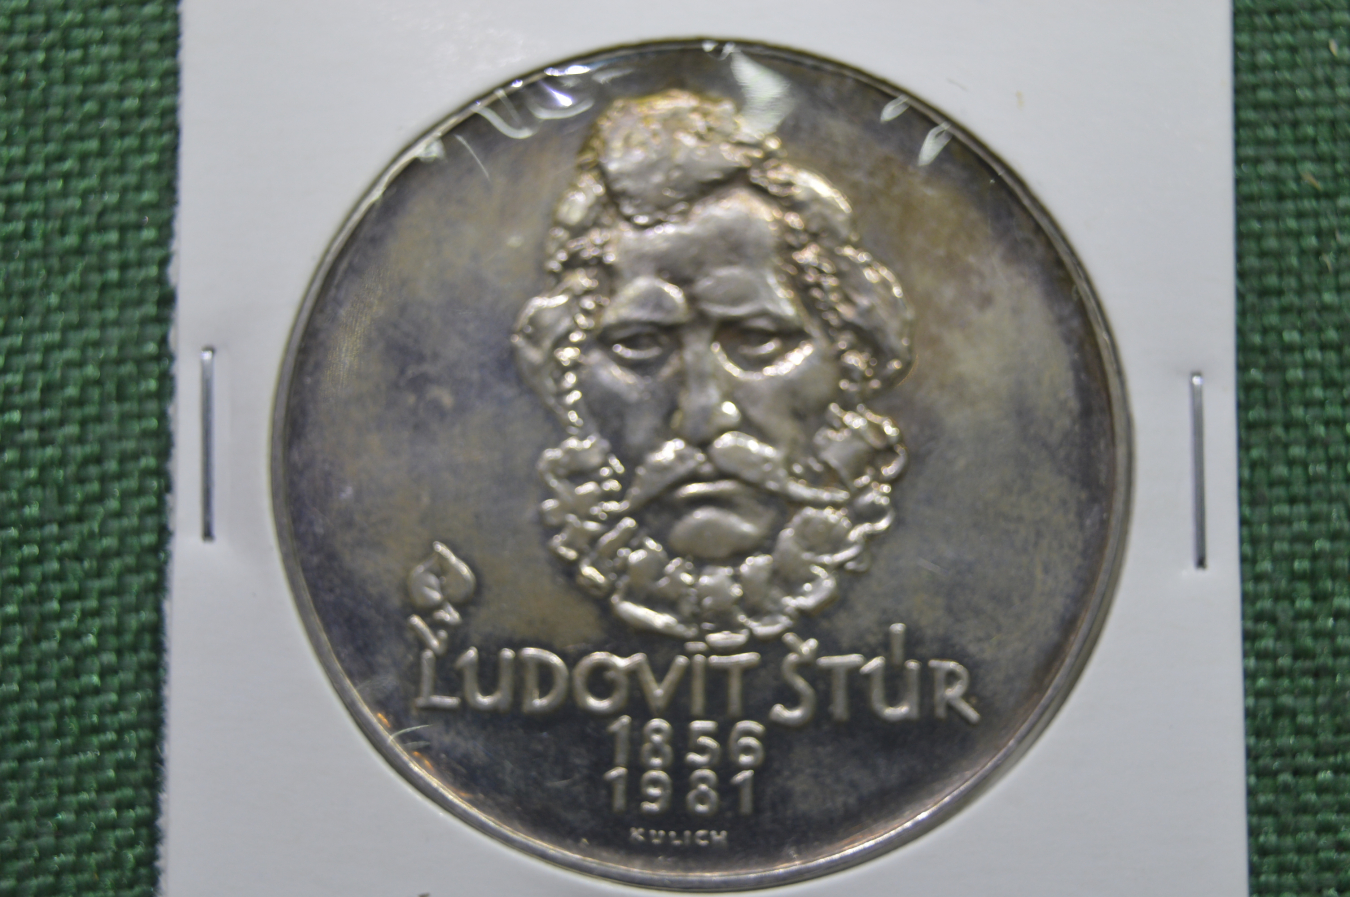 500 крон в рублях. Чехословакия 500 крон. Людовит Штур. Медаль серебро 1956-1981 Чехословакия Spork.